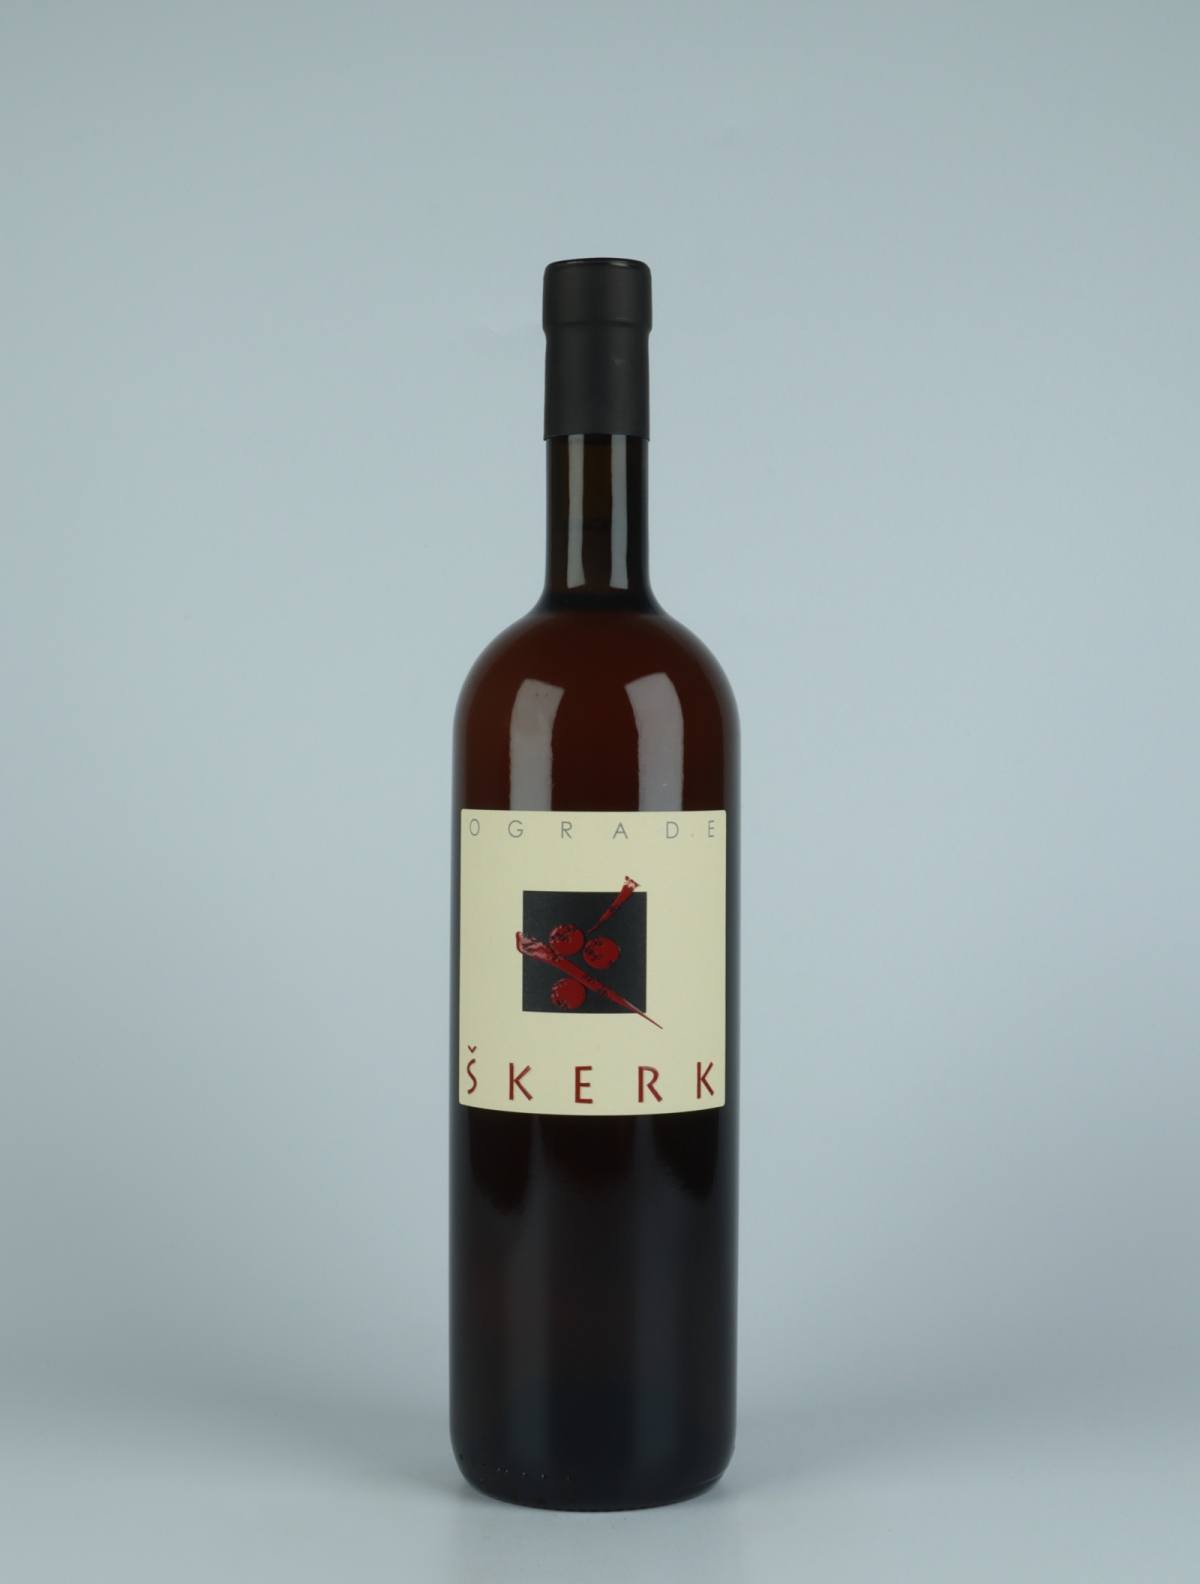 A bottle 2020 Ograde Orange wine from Skerk, Friuli in Italy